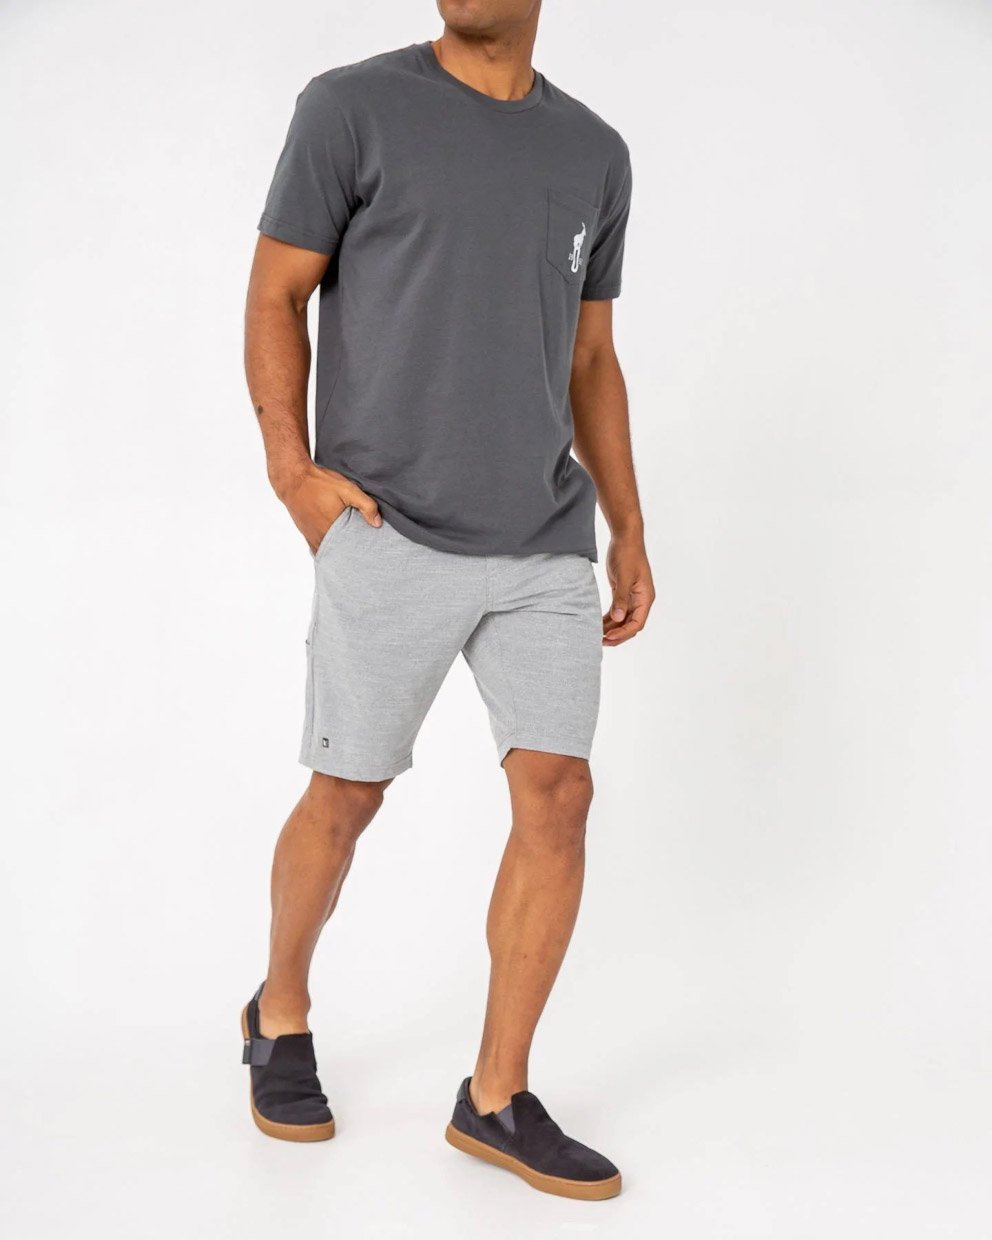 Linksoul Boardwalker Shorts